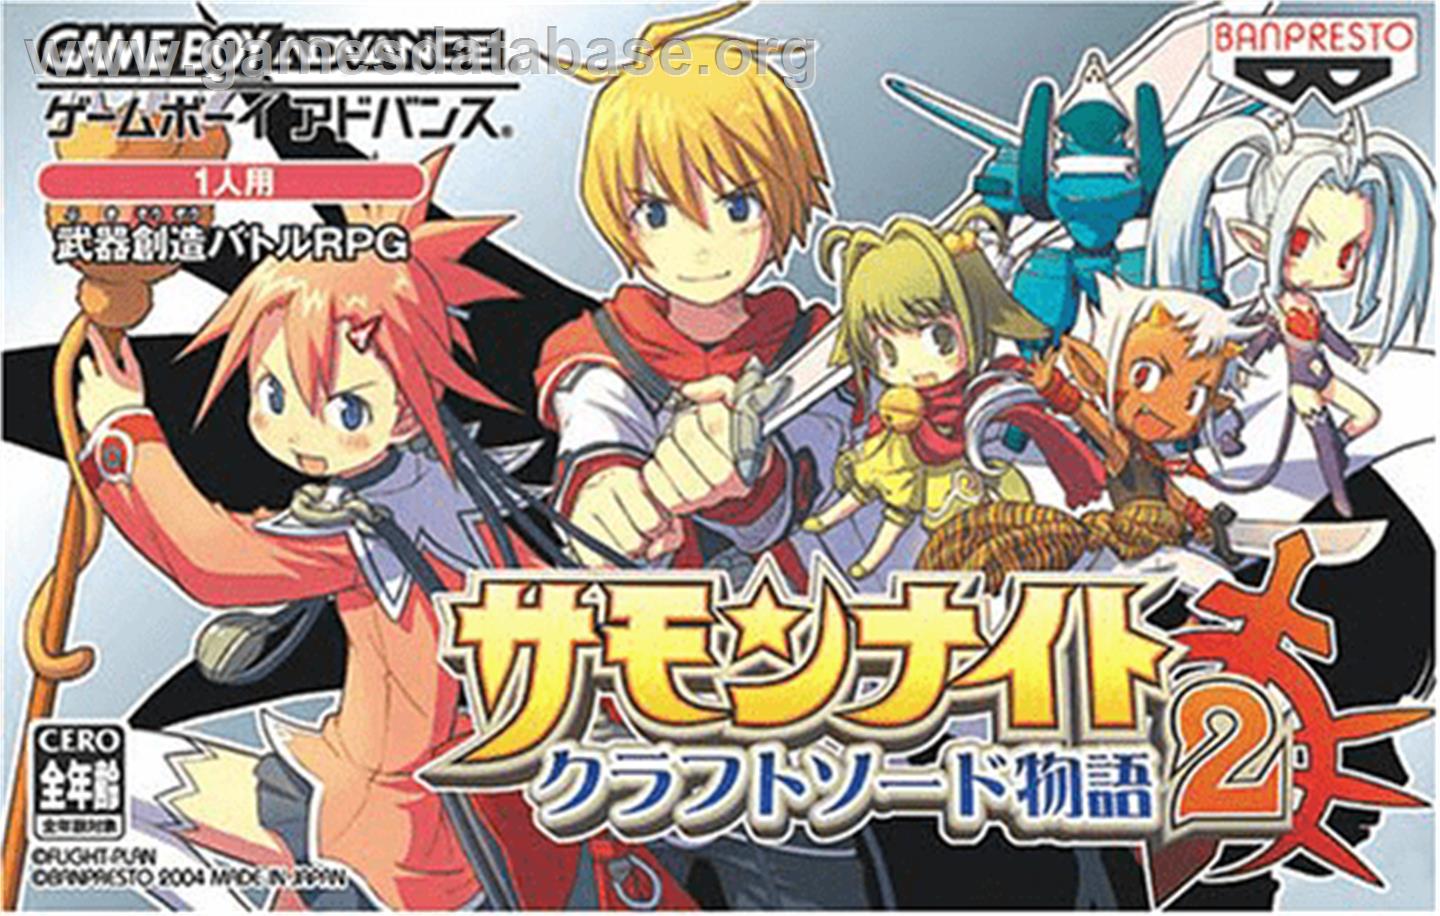 Summon Night Craft Sword Monogatari: Hajimari no Ishi - Nintendo Game Boy Advance - Artwork - Box